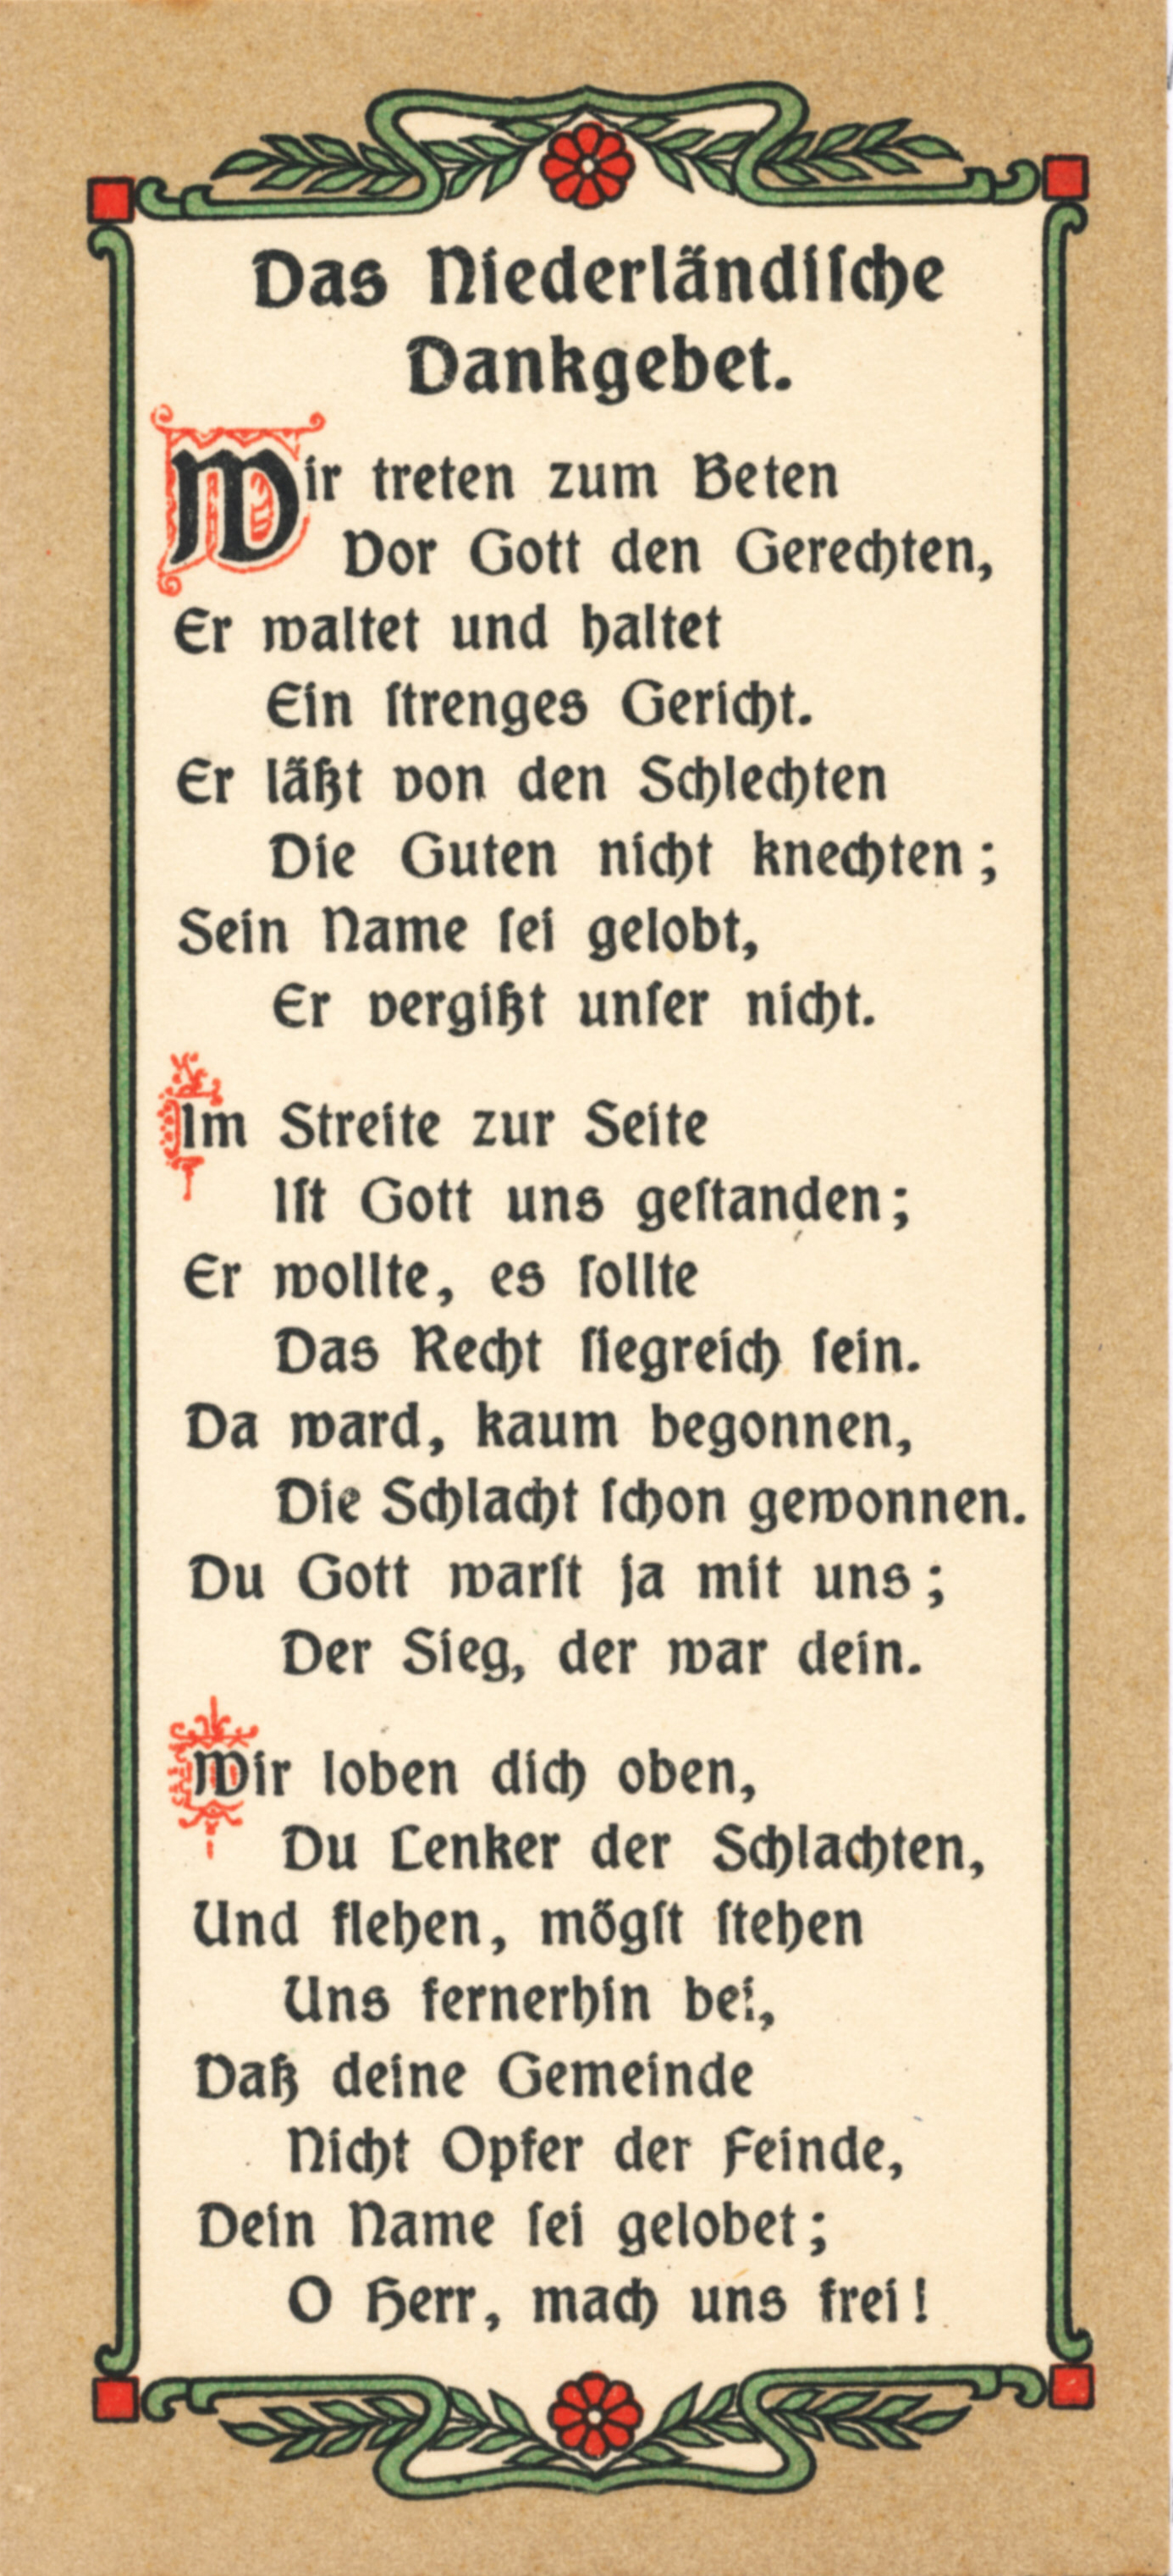 Niederländisches Dankgebet, Hrsg. Georg Aupperle